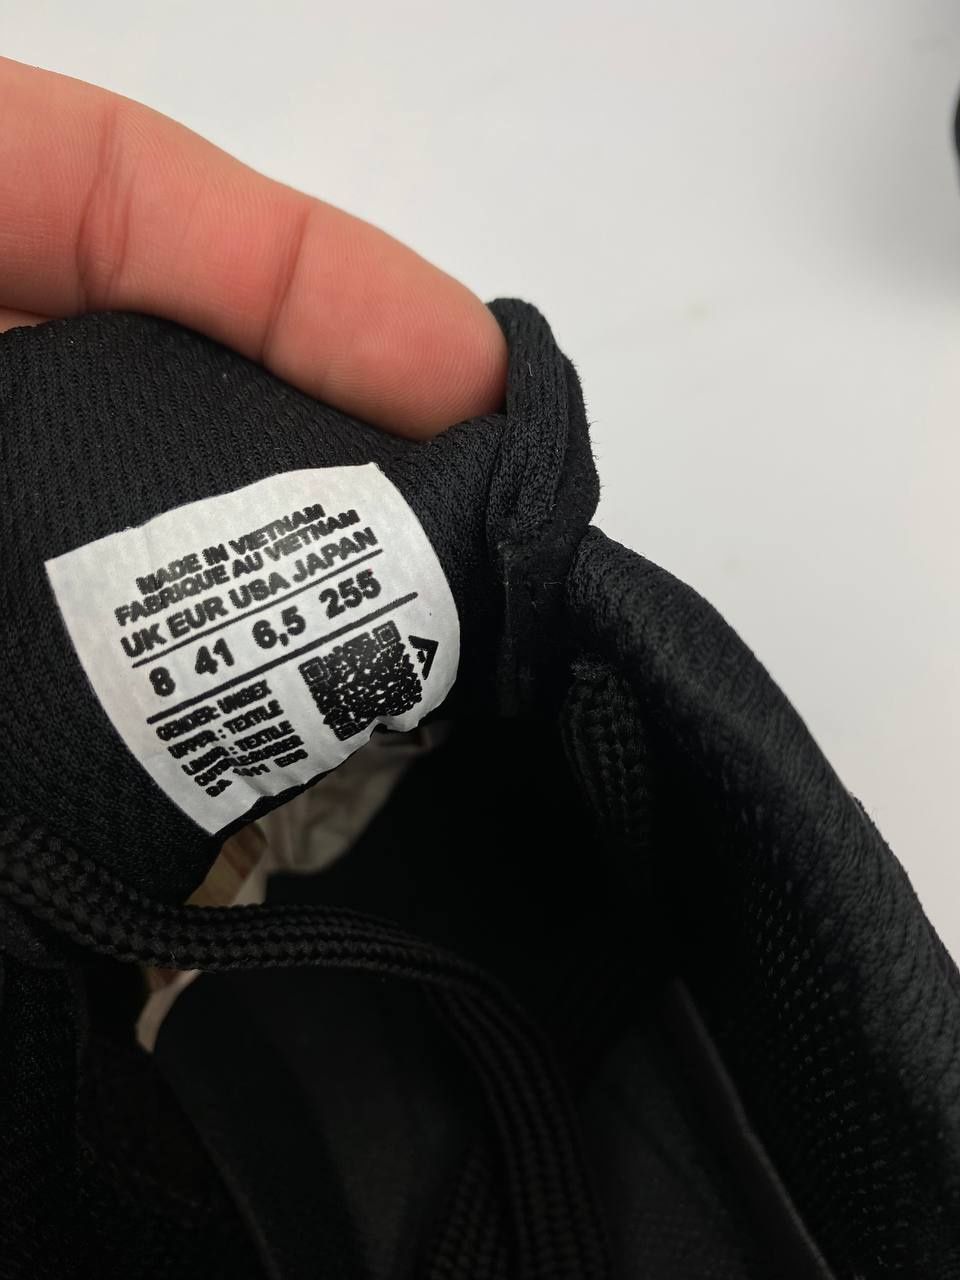 Nike Air max 90 білий та чорний колір (41-46 розмір) накладений платіж